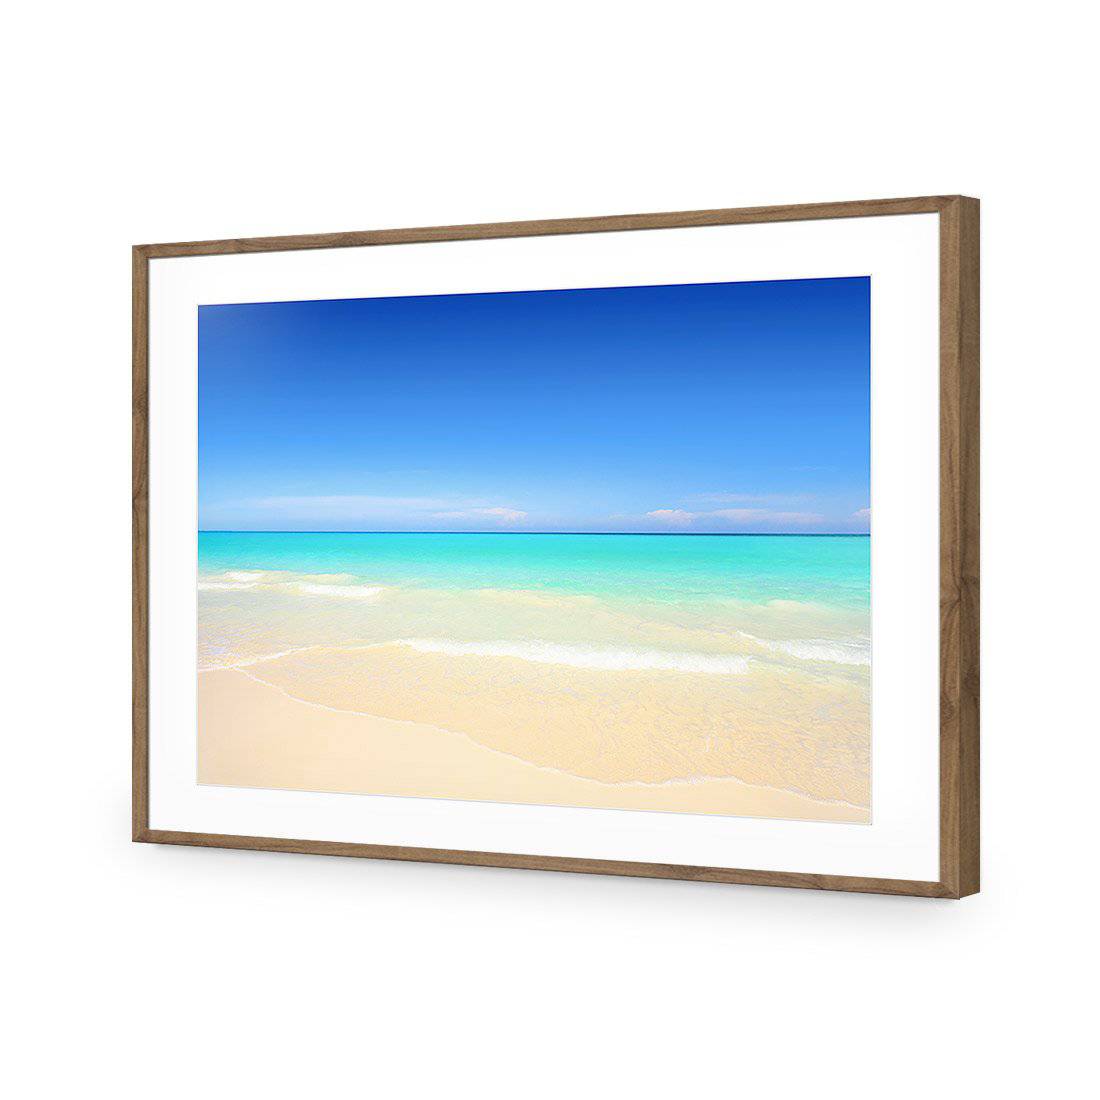 Paradise Beach-Acrylic-Wall Art Design-With Border-Acrylic - Natural Frame-45x30cm-Wall Art Designs